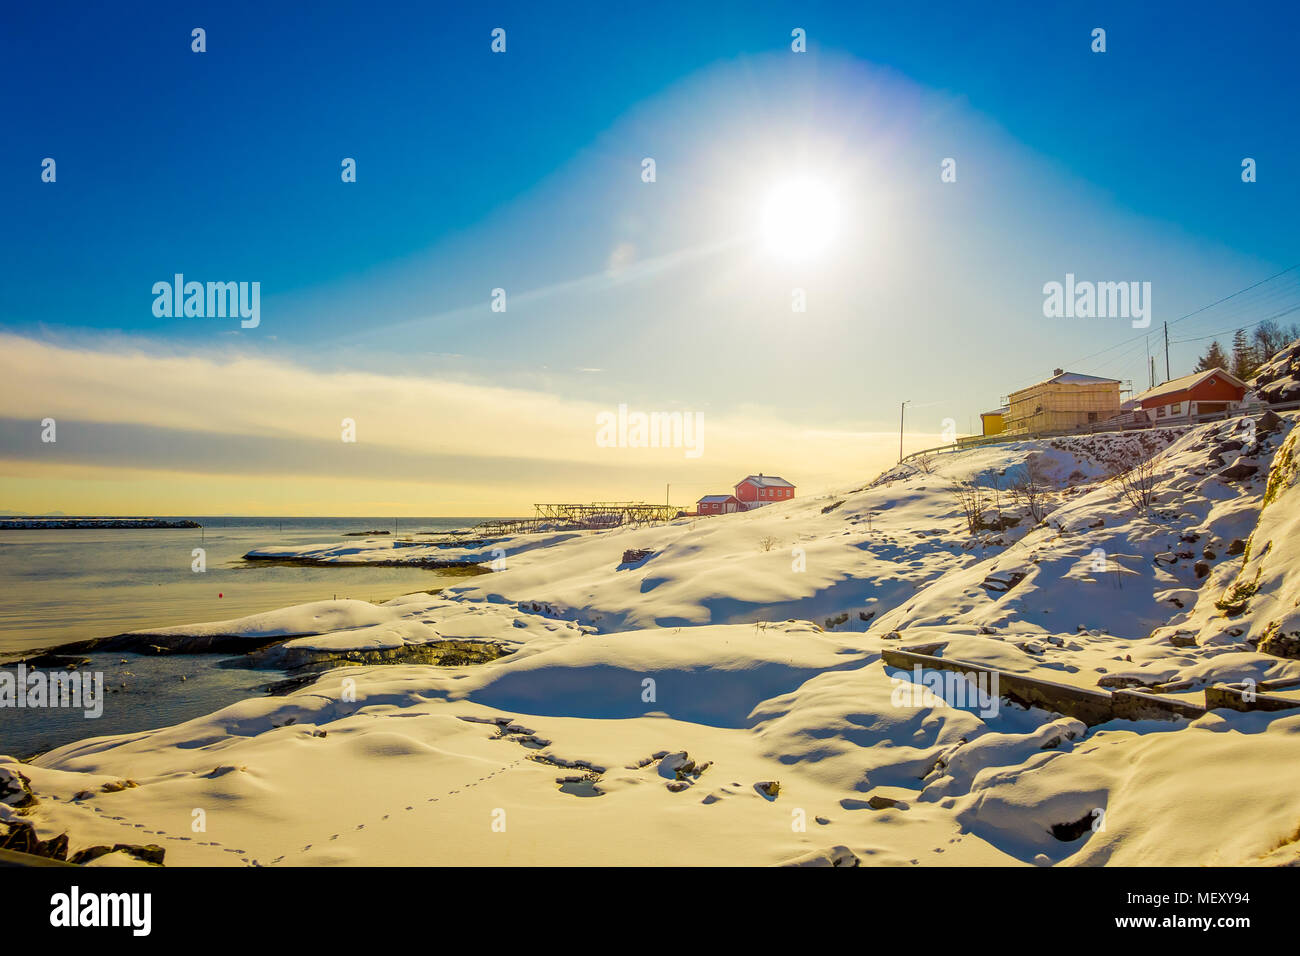 Im freien Blick auf einige Gebäude in der Bucht von Lofoten Inseln, umgeben von schneebedeckten Bergen und bunten Winter Station und Sun shinny im Himmel Stockfoto